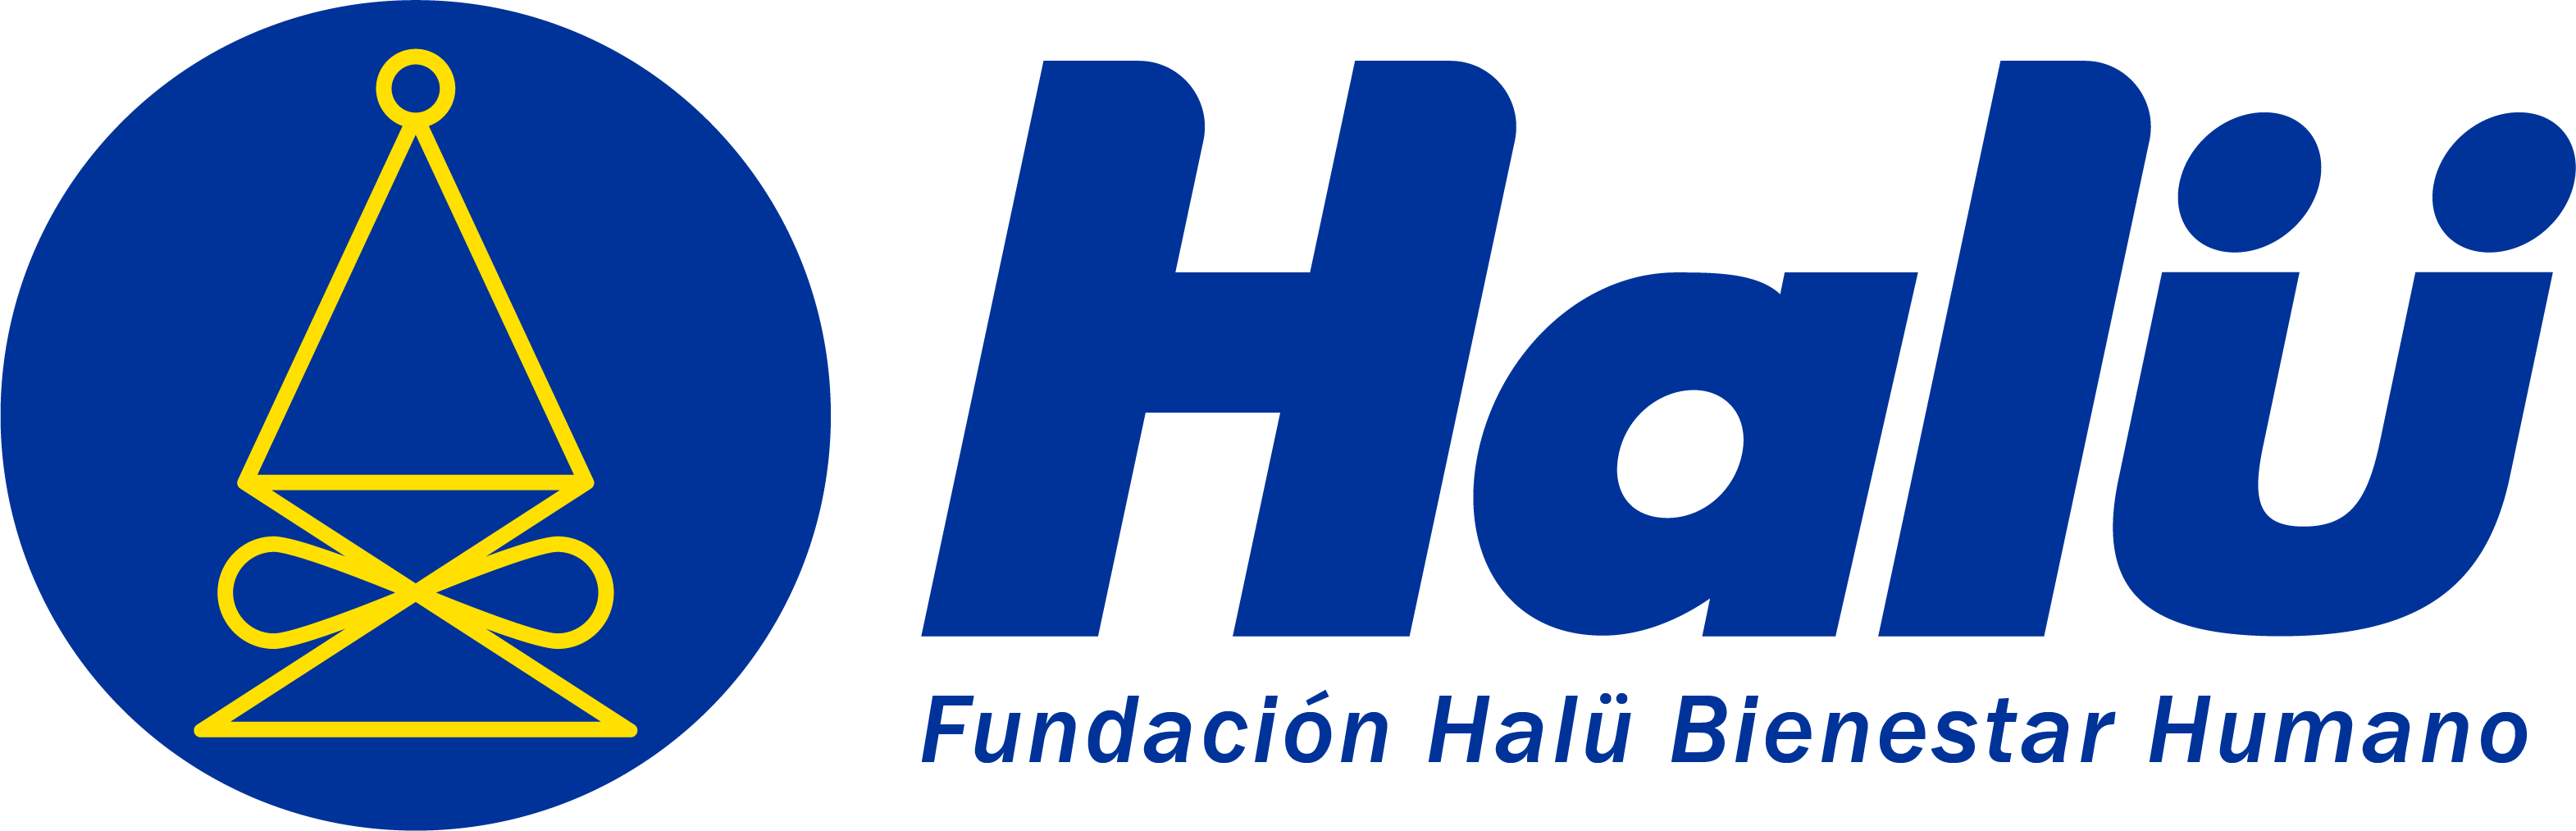 Fundación Halü Bienestar Humano